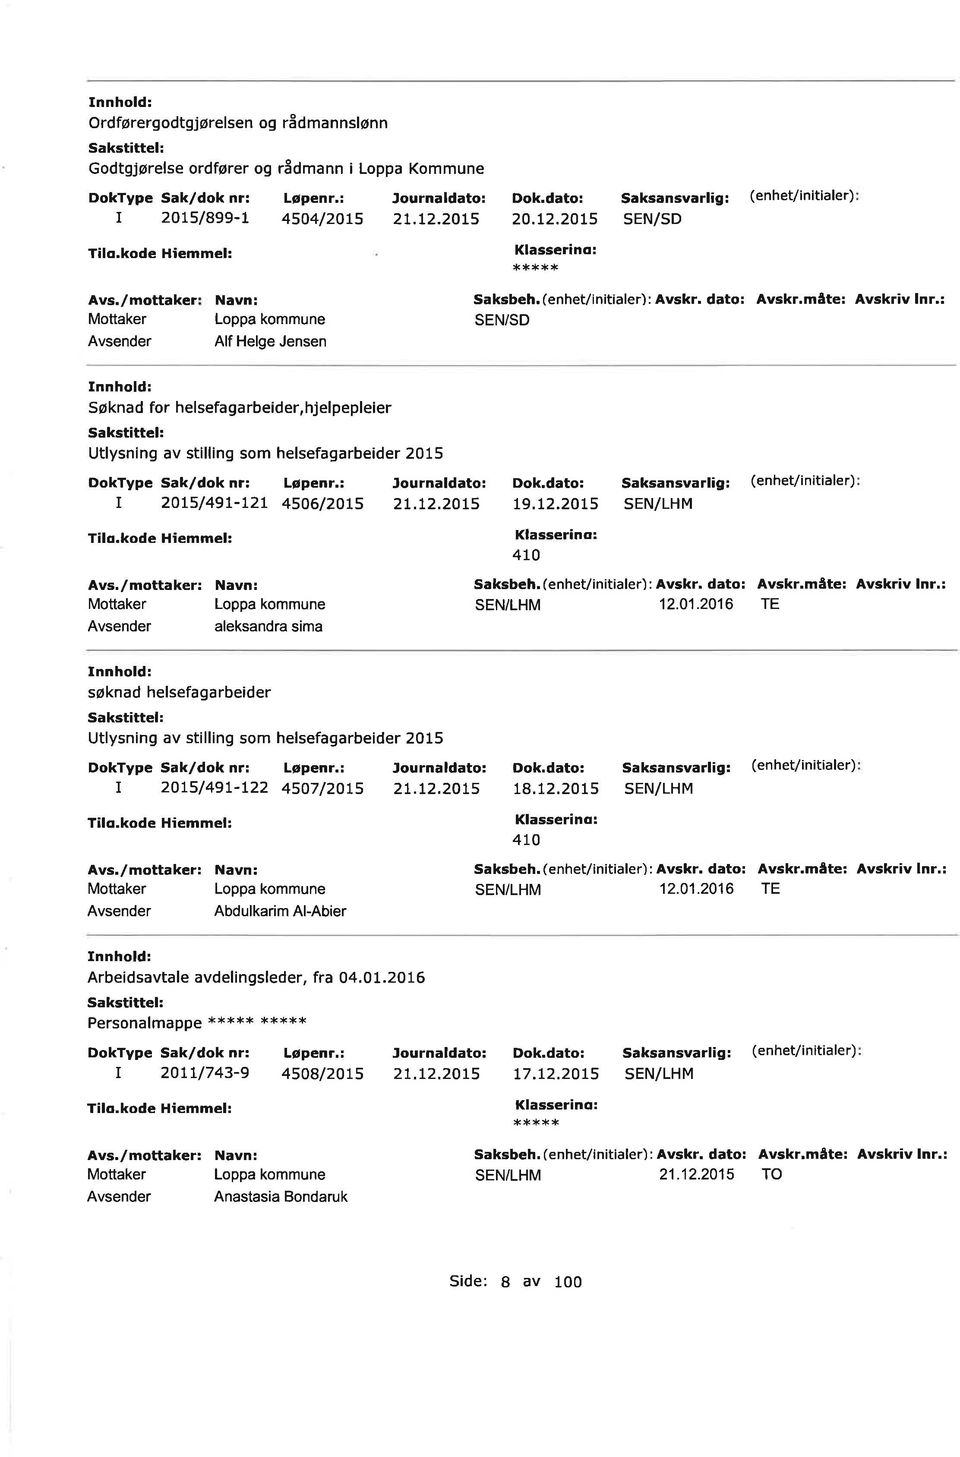 2OL5 aleksandra sima søknad helsefagarbeider Sakst ttel: Utlysning av stilling som helsefagarbeider 2015 I 2OL5/49L-L22 4507/20L5 2L.L2.20L5 Abdulkarim Al-Abier 19.12.2015 4t0 12,01.